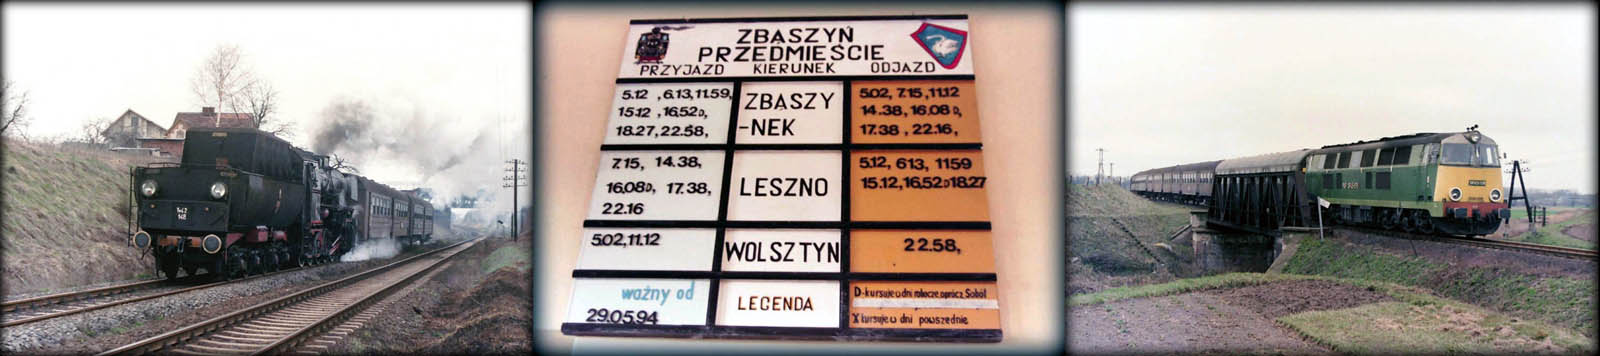 Od lewej: Adamowo 07.03.1990 , Ty42-148. Rozkład jazdy w poczekalni Zbąszyń Przedmieście w dniu 05.07.1994. SP45-175 z Wolsztyna do Poznania w dniu 07.03.1990.